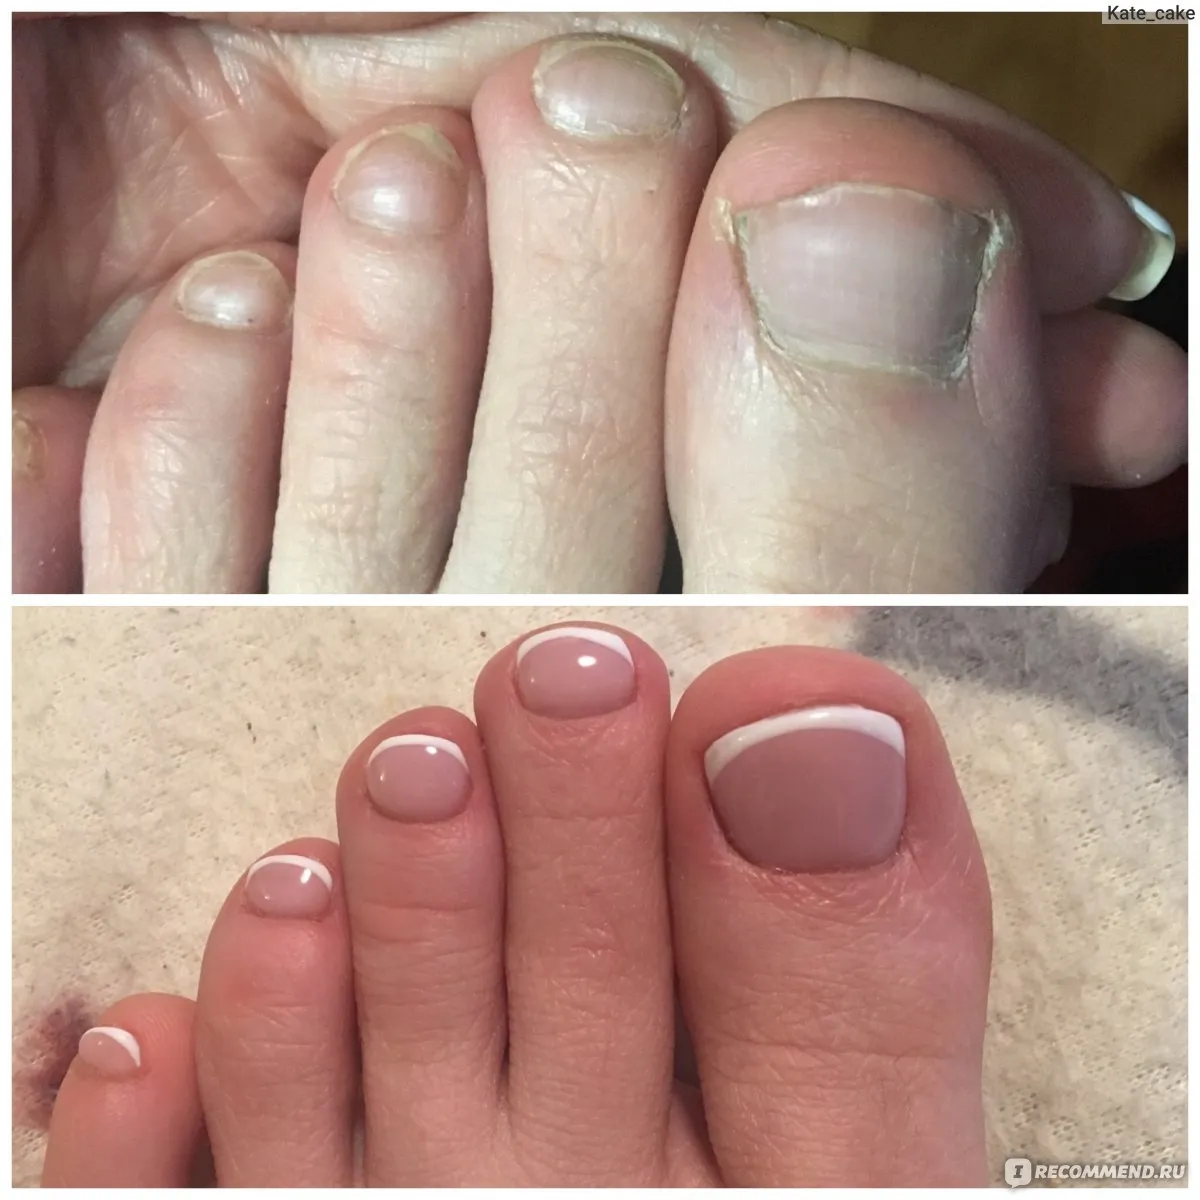 Педикюр до и после. Неухоженные женские ногти.